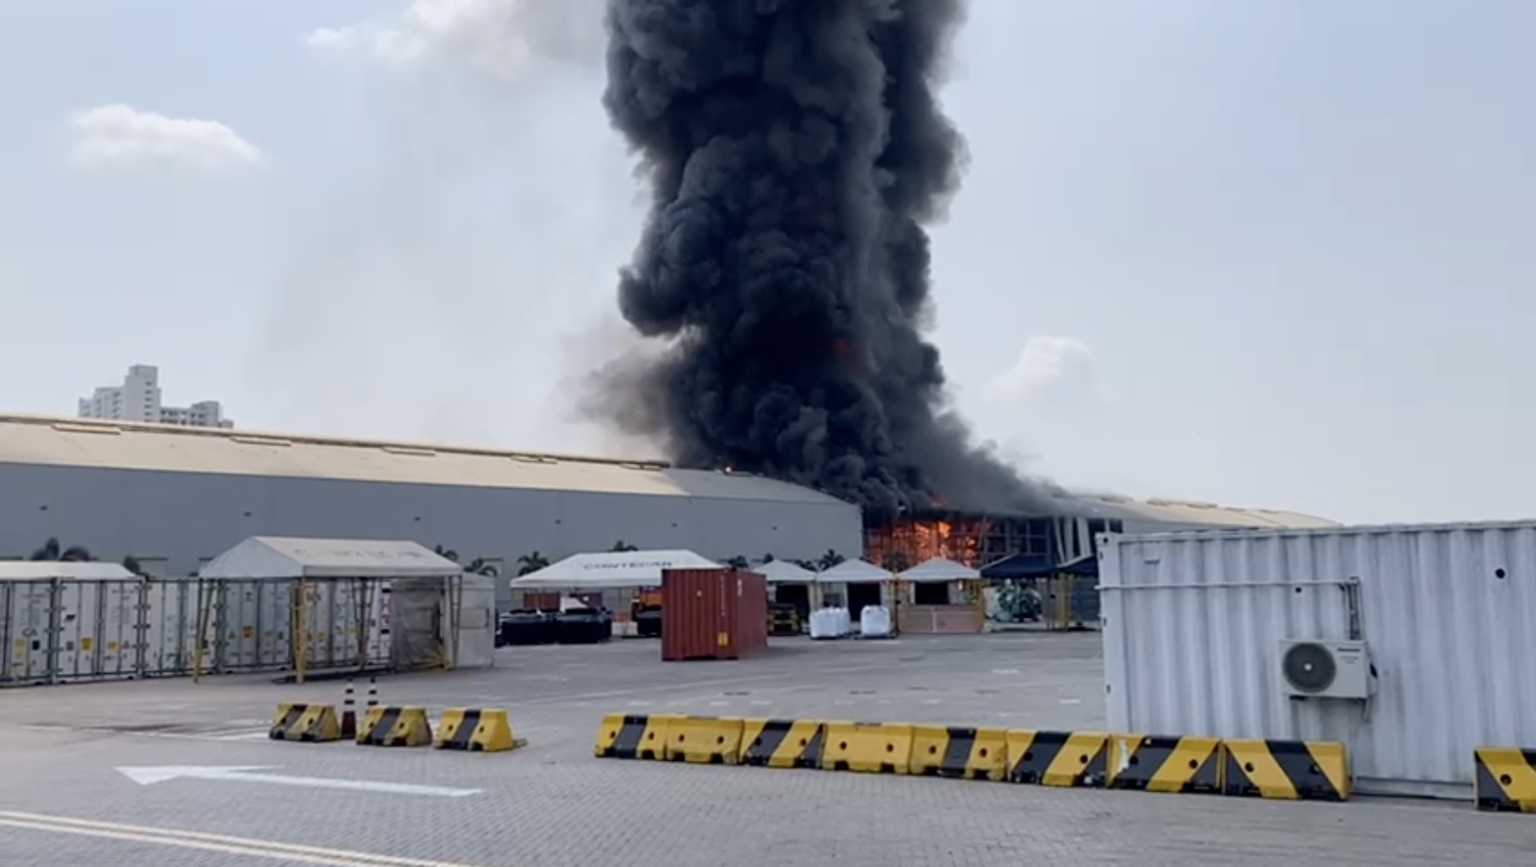 Grave Incendio hoy en Puerto de Contecar, Cartagena – Video del momento de la explosión